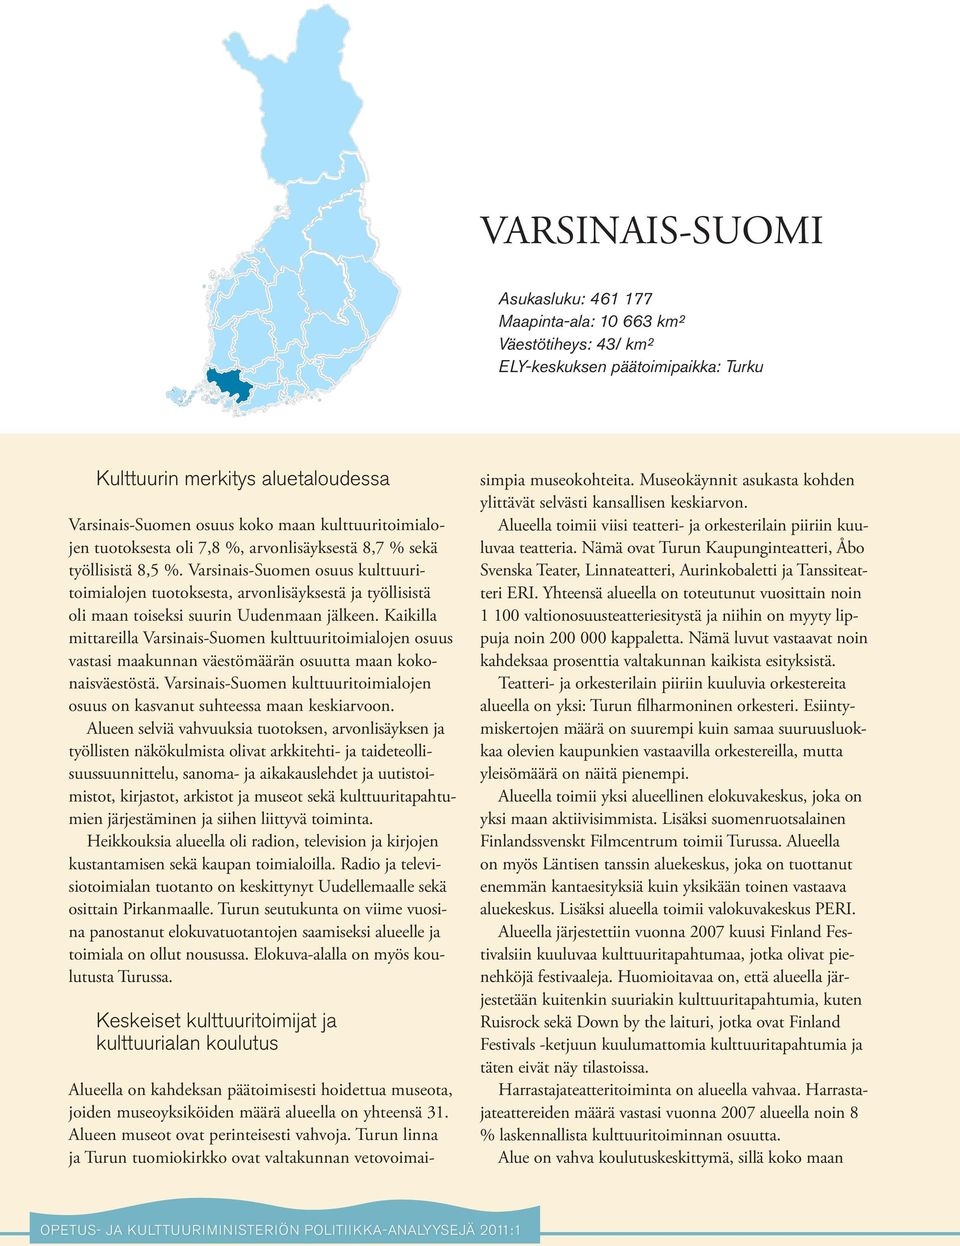 Varsinais-Suomen osuus kulttuuritoimialojen tuotoksesta, arvonlisäyksestä ja työllisistä oli maan toiseksi suurin Uudenmaan jälkeen.